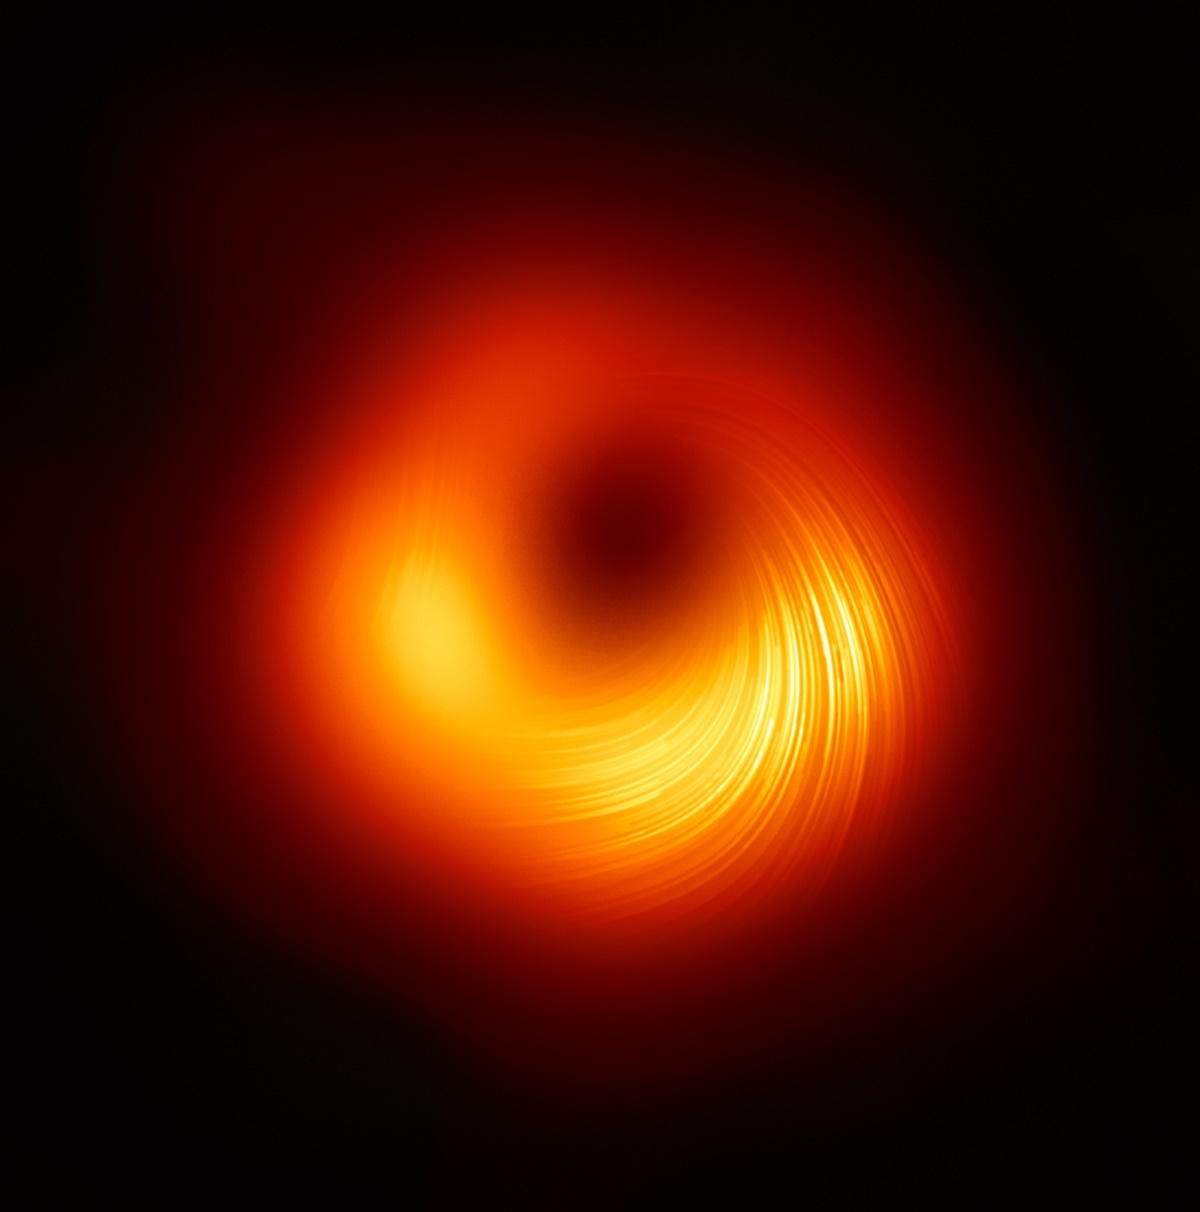 M87星系中心的偏振光影像，線條顯示與黑洞周圍磁場有關的偏振方向(圖片版權:EHT Collaboration)